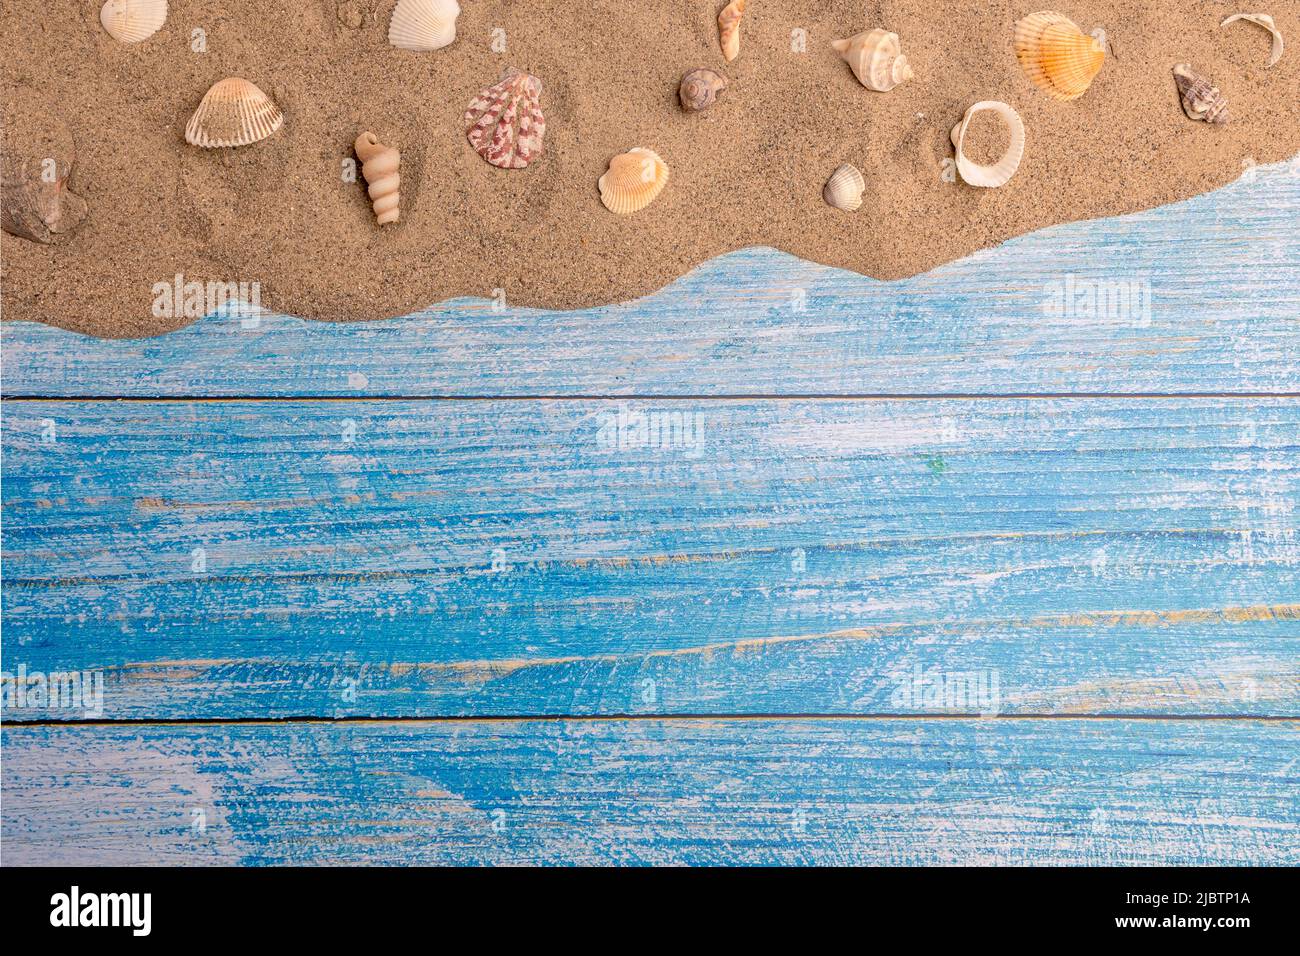 Conchiglie sulla sabbia su sfondo blu. Vacanze estive, spiaggia, relax, mare, oceano, concetto di viaggio. Foto Stock